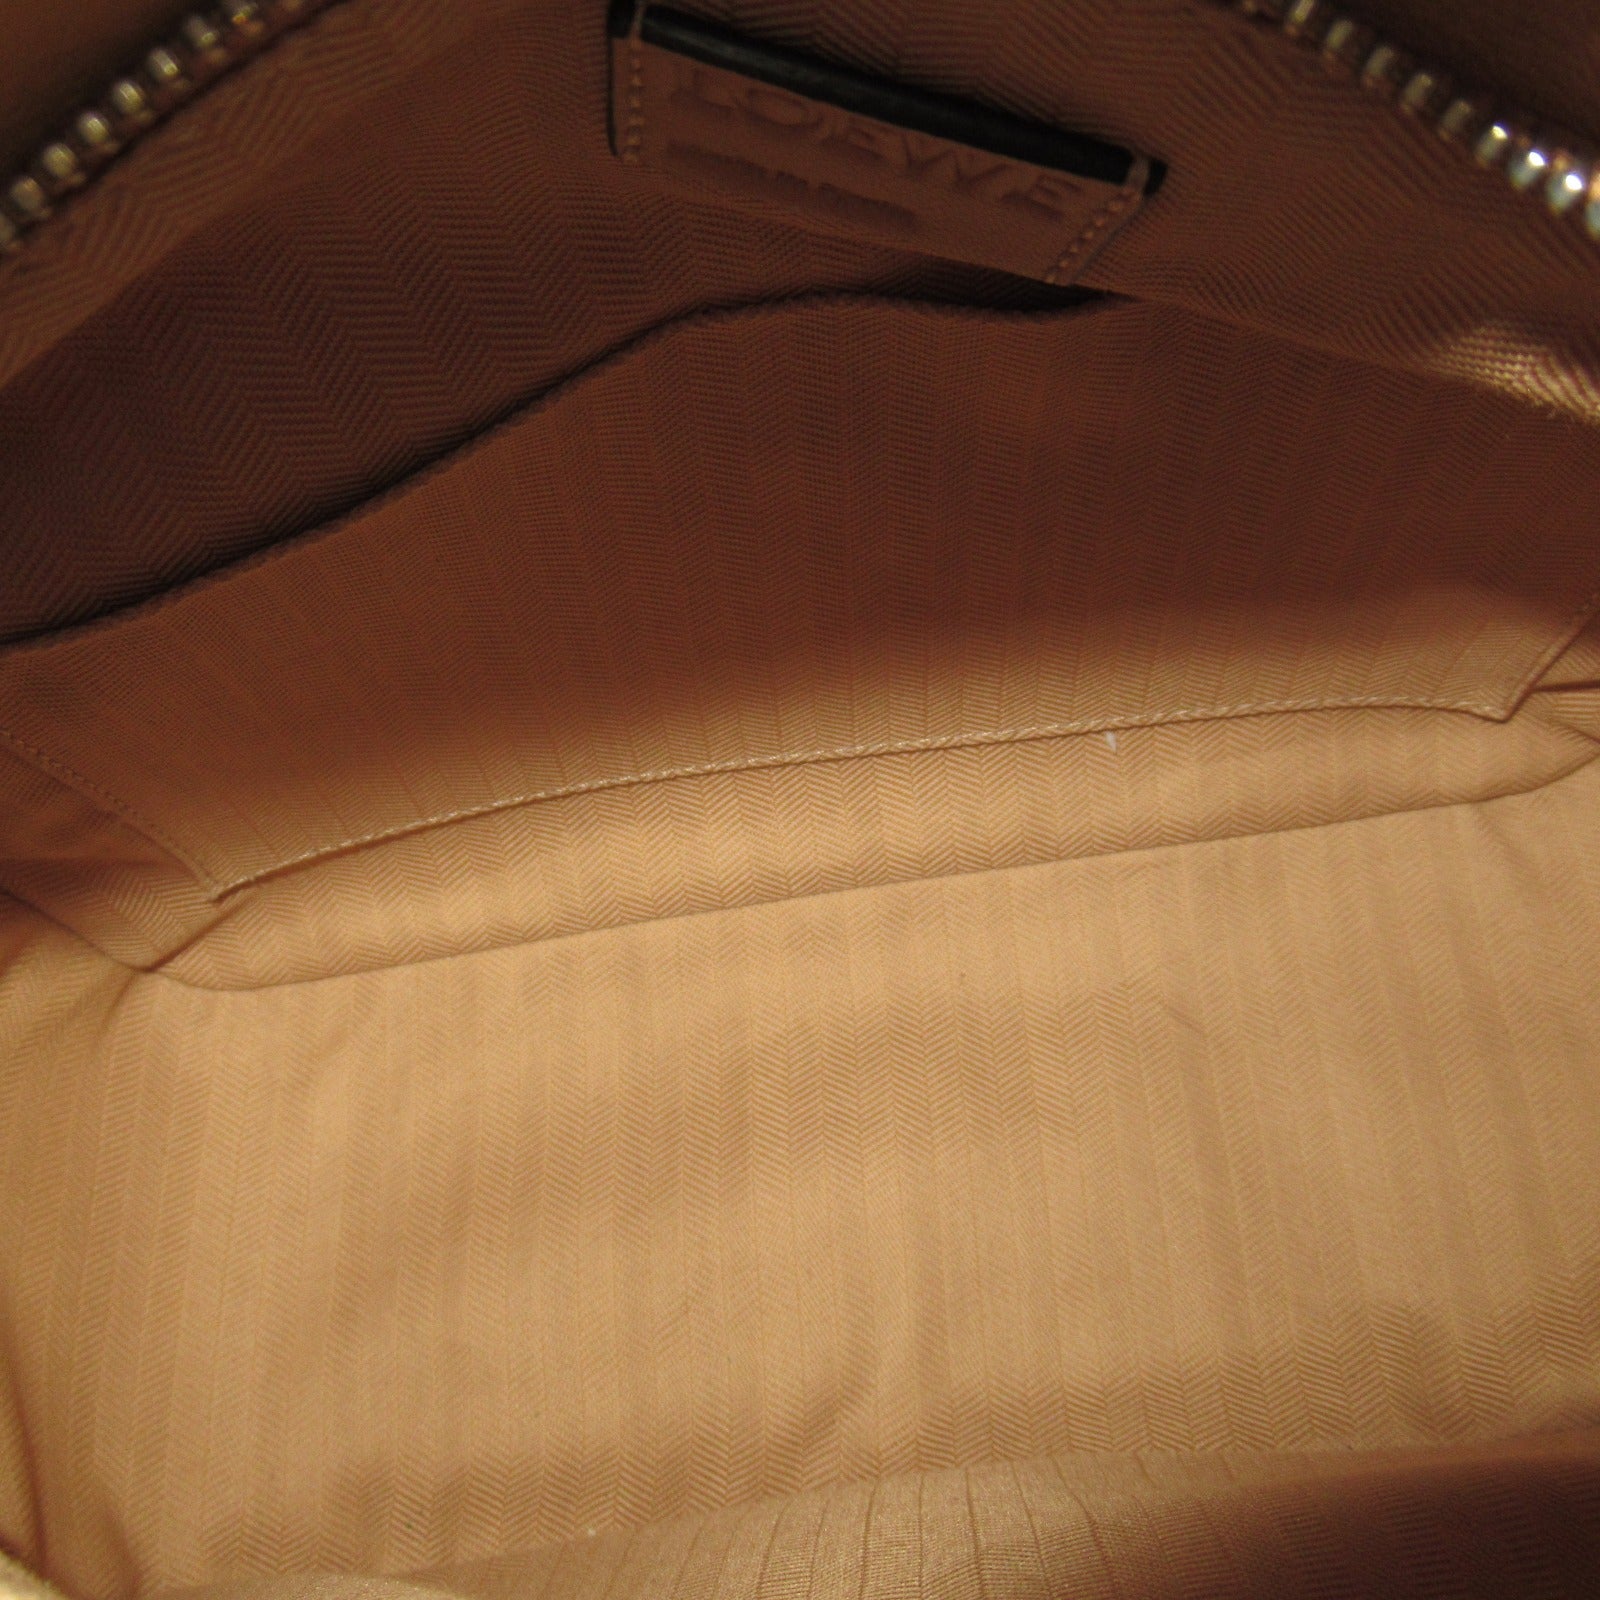 Loewe LOEWE Puzzle Bump Bag Small Shoulder Bag Small Shoulder Bag  Leather  Brown Canals (Bandf )